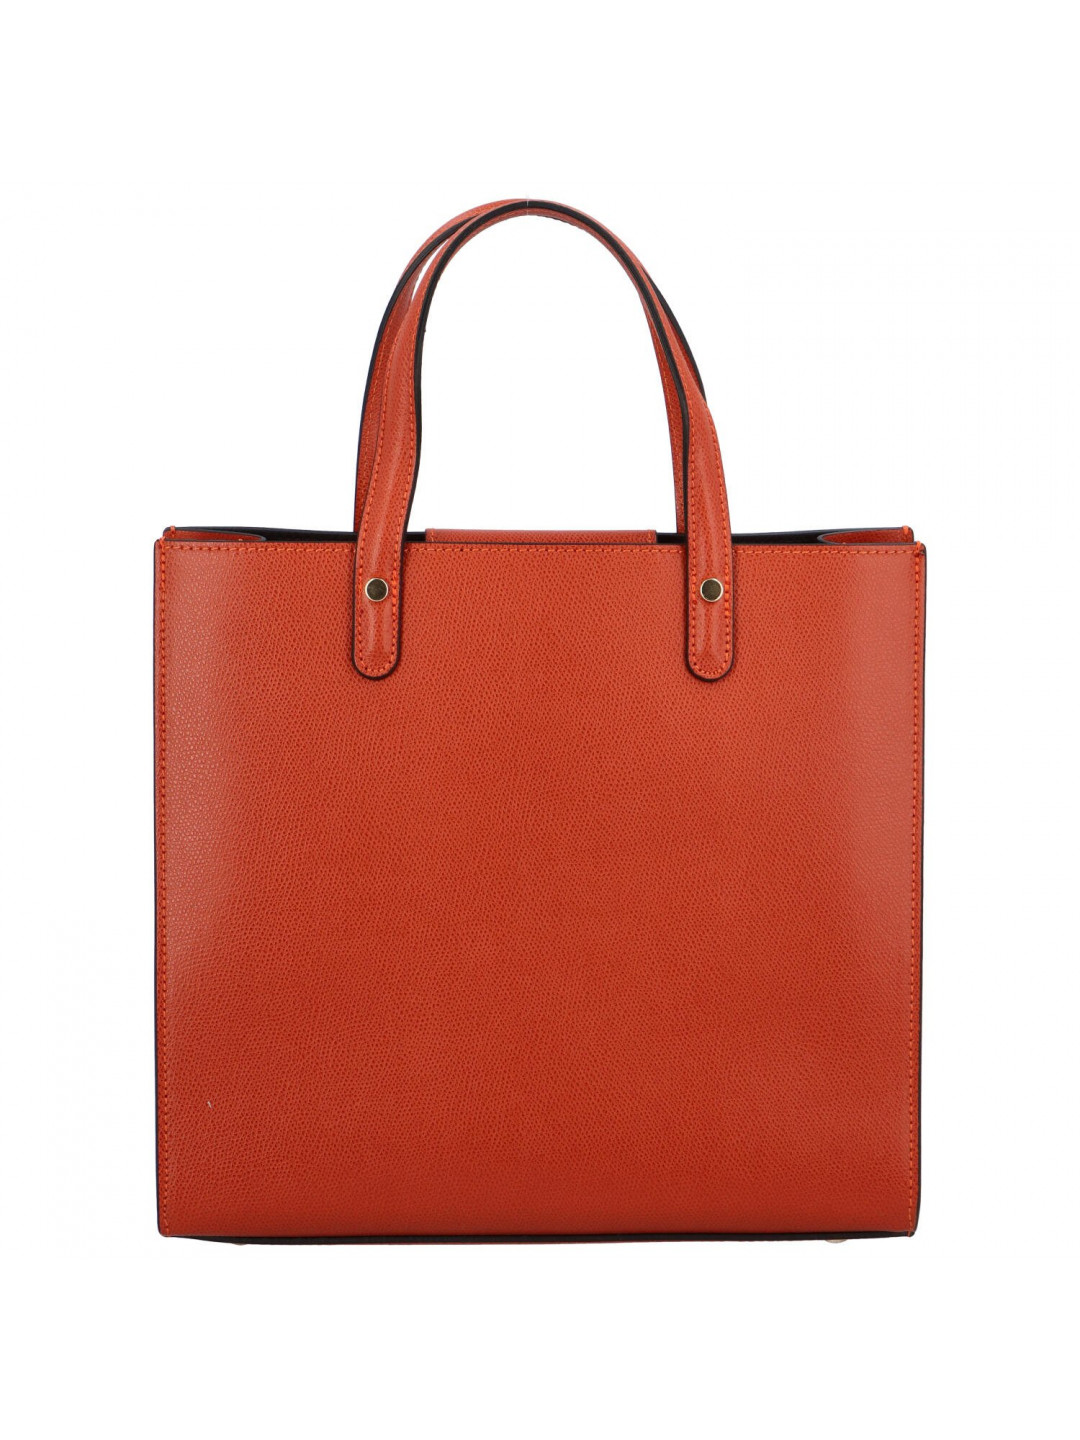 Luxusní dámská kožená kabelka do ruky Amada tmavě oranžová